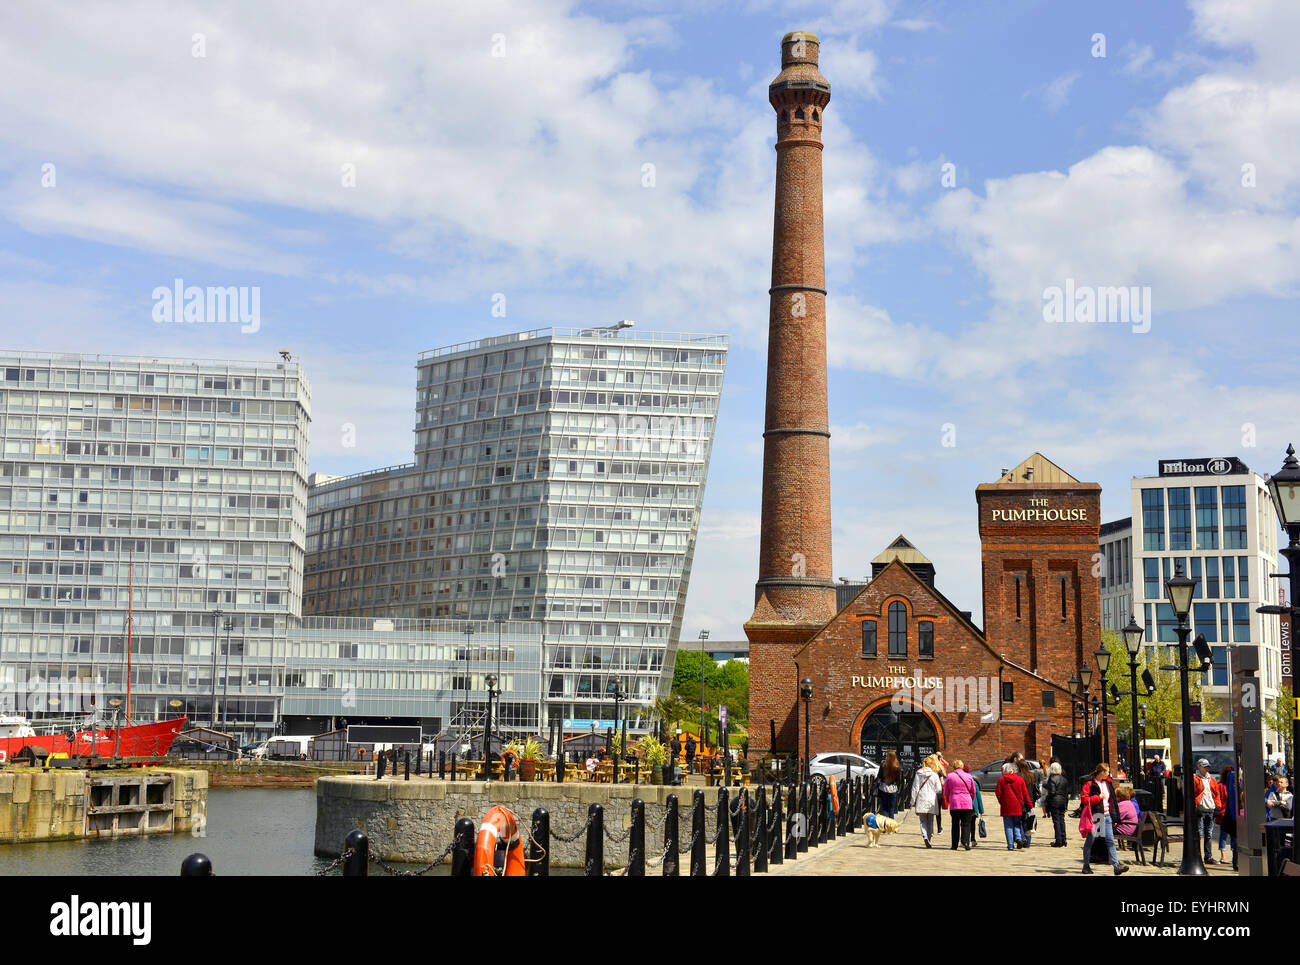 La station de pompage à l'Albert Dock, ancien et nouveau bâtiment sur la ville de Liverpool, la ville de Liverpool, Angleterre, Royaume-Uni Banque D'Images